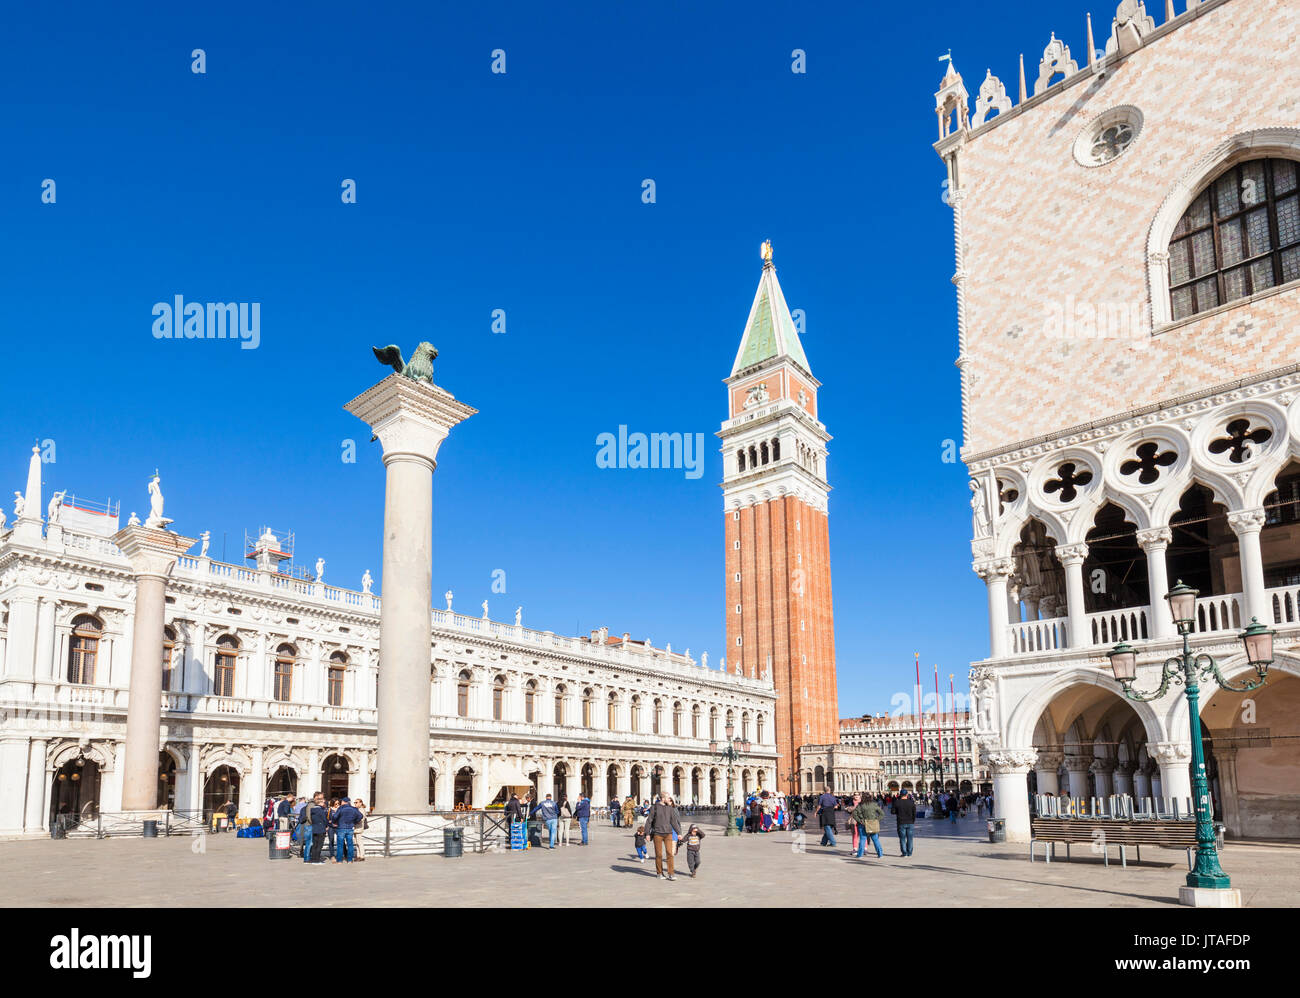 Torre del Campanile, il Palazzo Ducale (Palazzo dei Dogi), Piazzetta, Piazza San Marco, Venezia, Sito Patrimonio Mondiale dell'UNESCO, Veneto, Italia, Europa Foto Stock